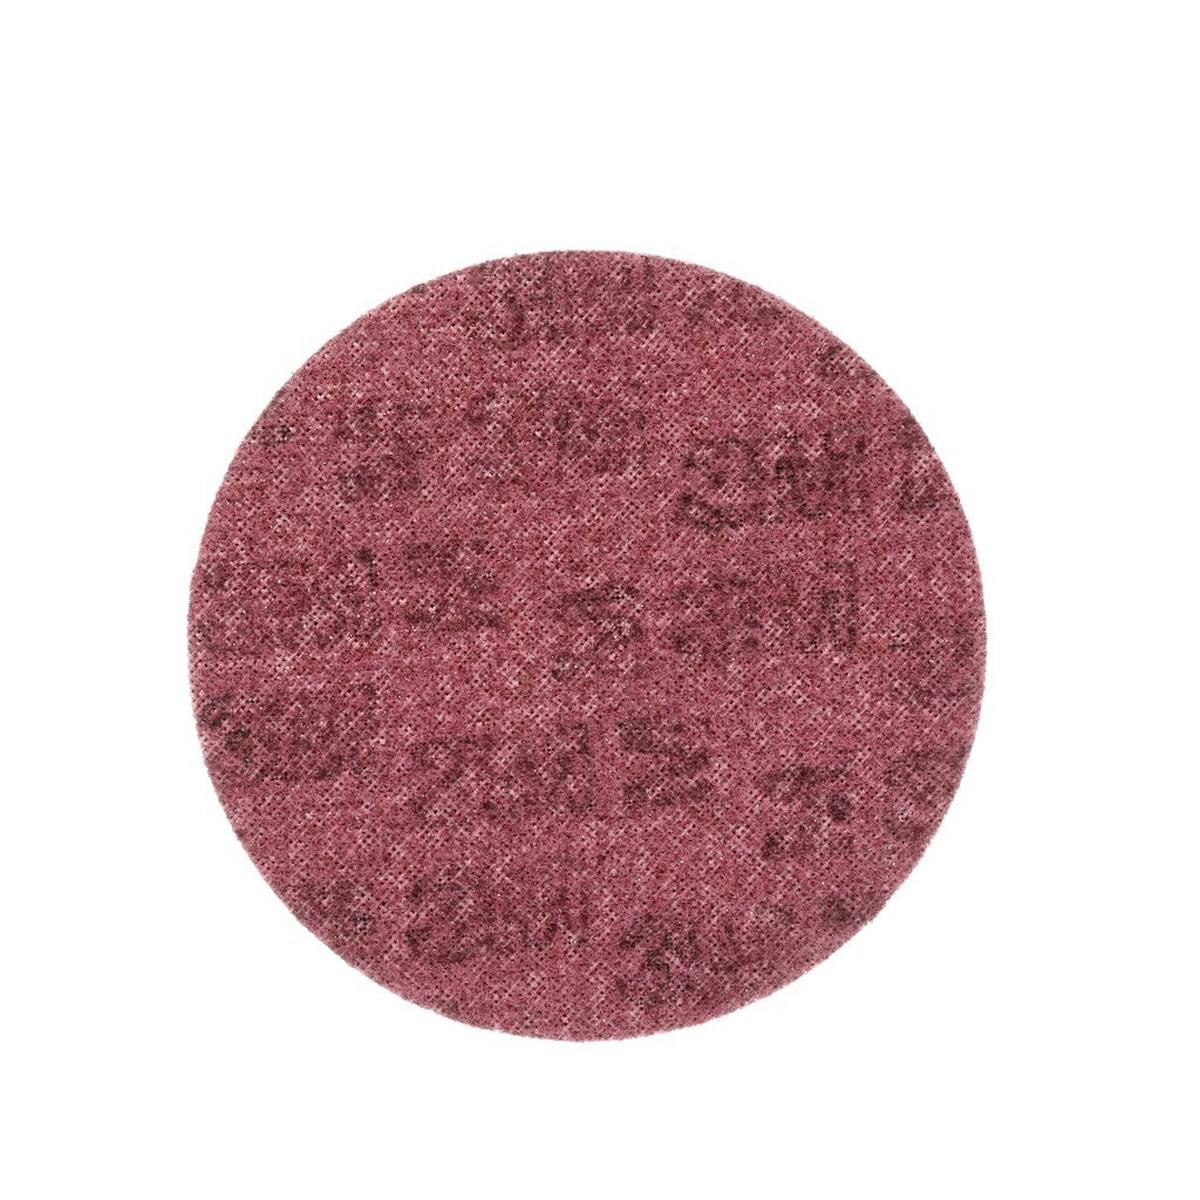 3M Scotch-Brite disco no tejido SC-DH sin centrar, rojo 150 mm, A, medio #109220